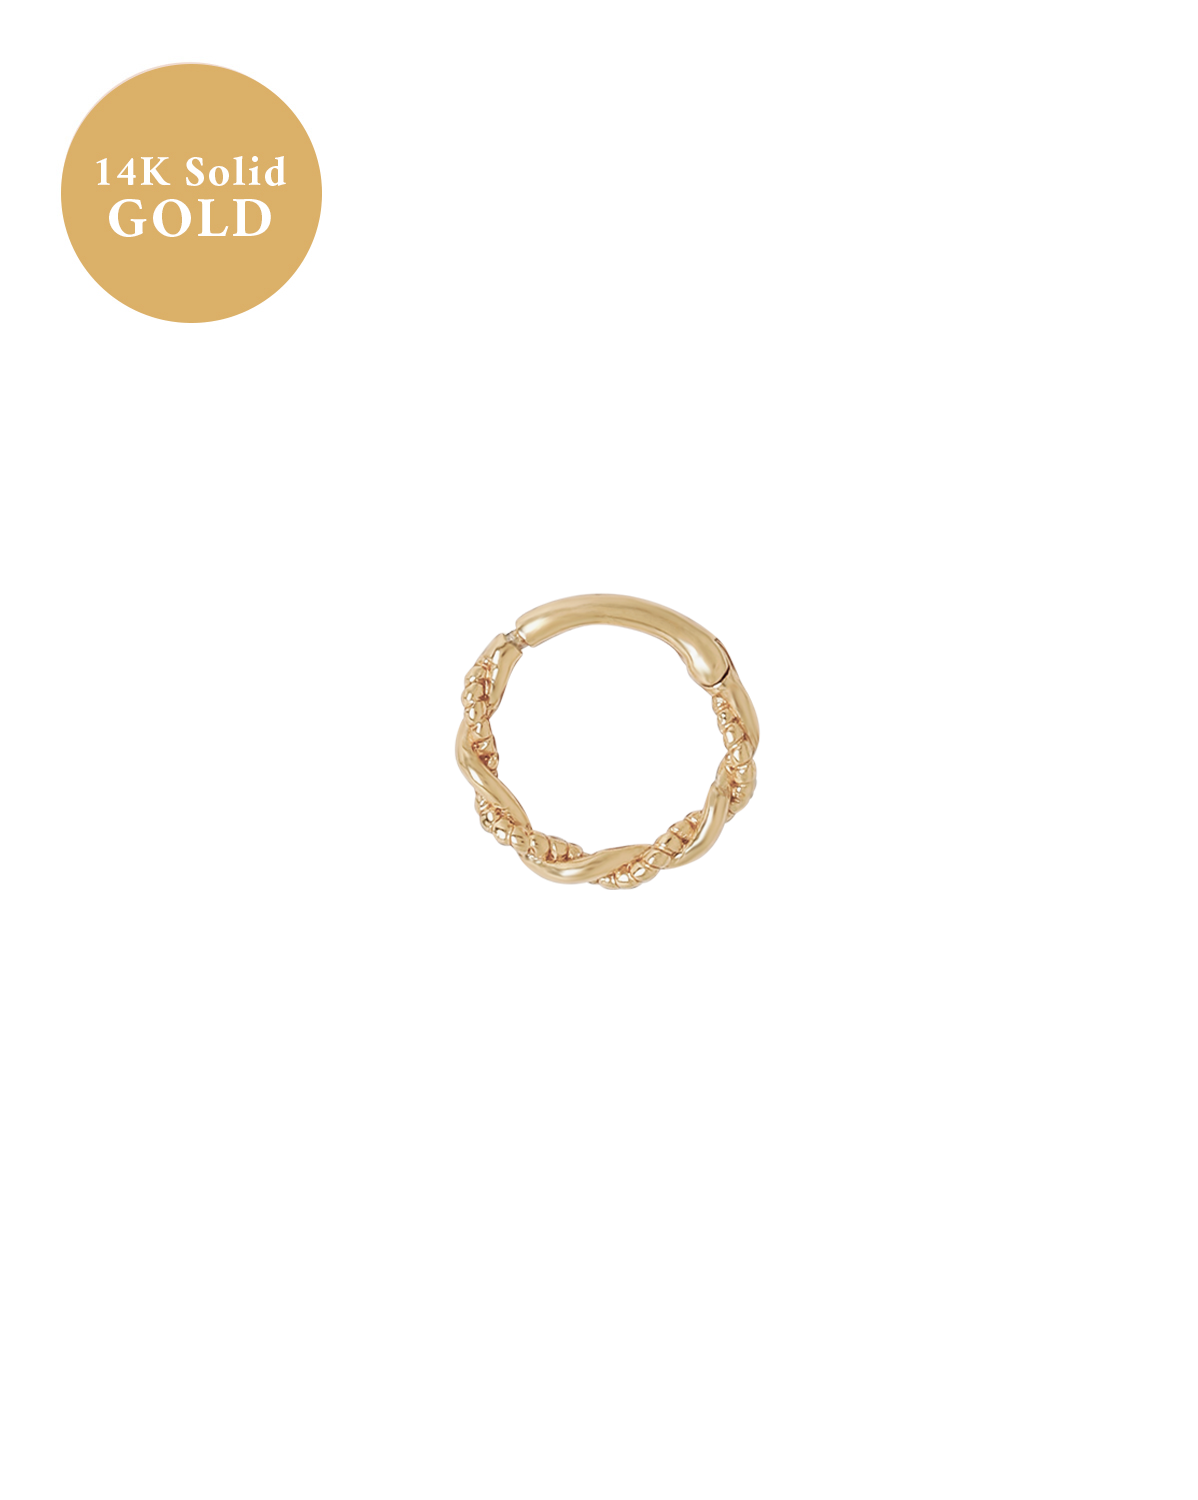 14K Solid Gold Merida Curled Hoop